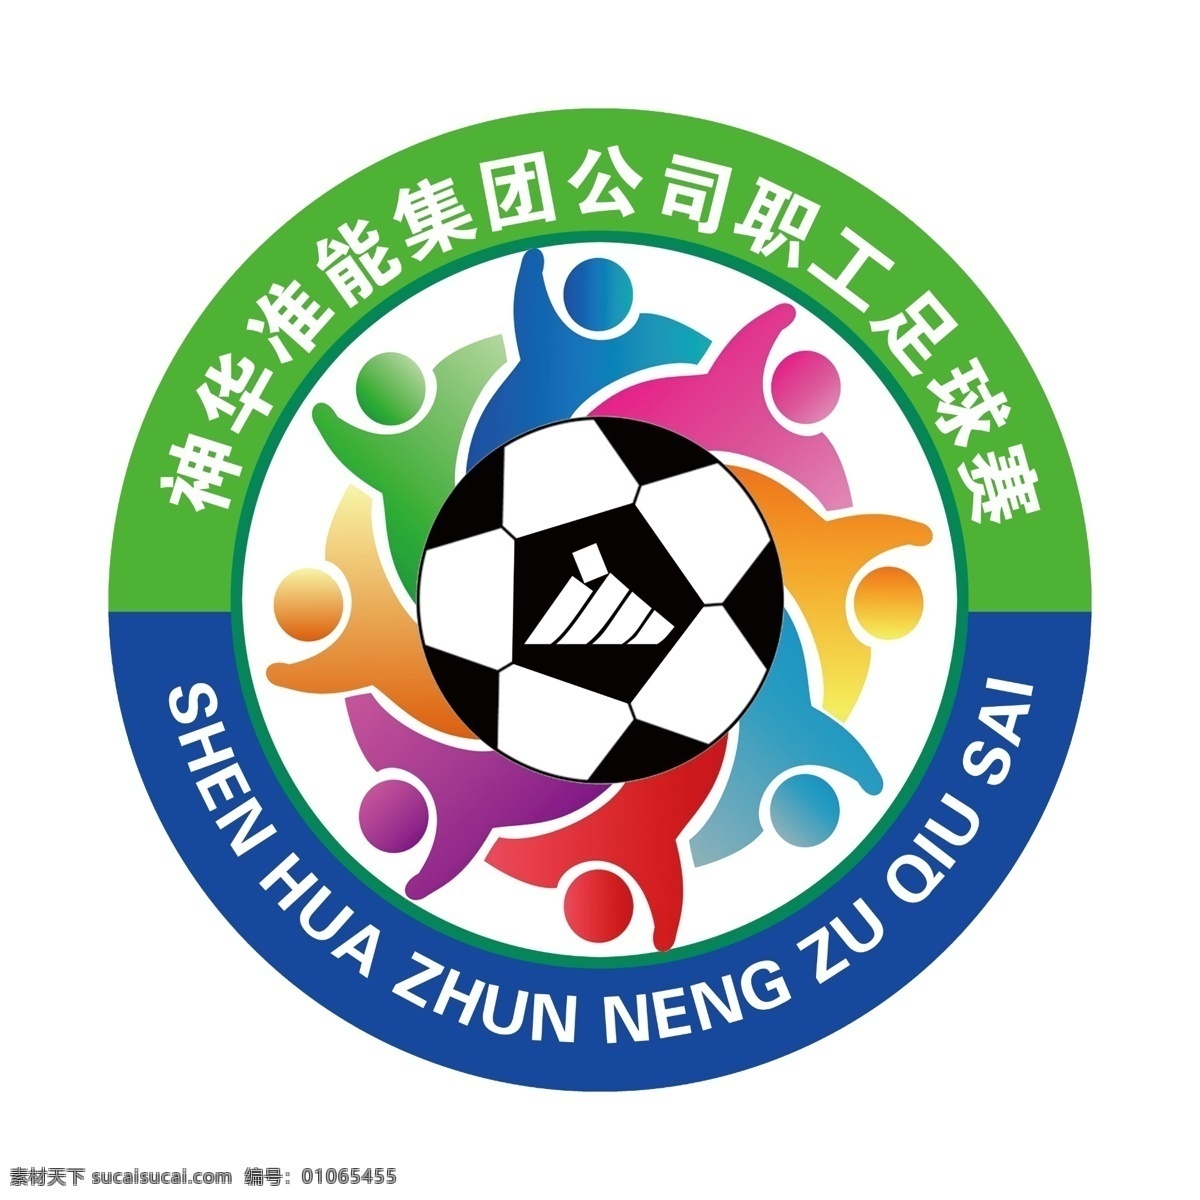 神华 准 足球赛 标志 运动会 圆形标识 足球比赛 彩色标志 团结合作 小人 足球 企业单位 画册设计